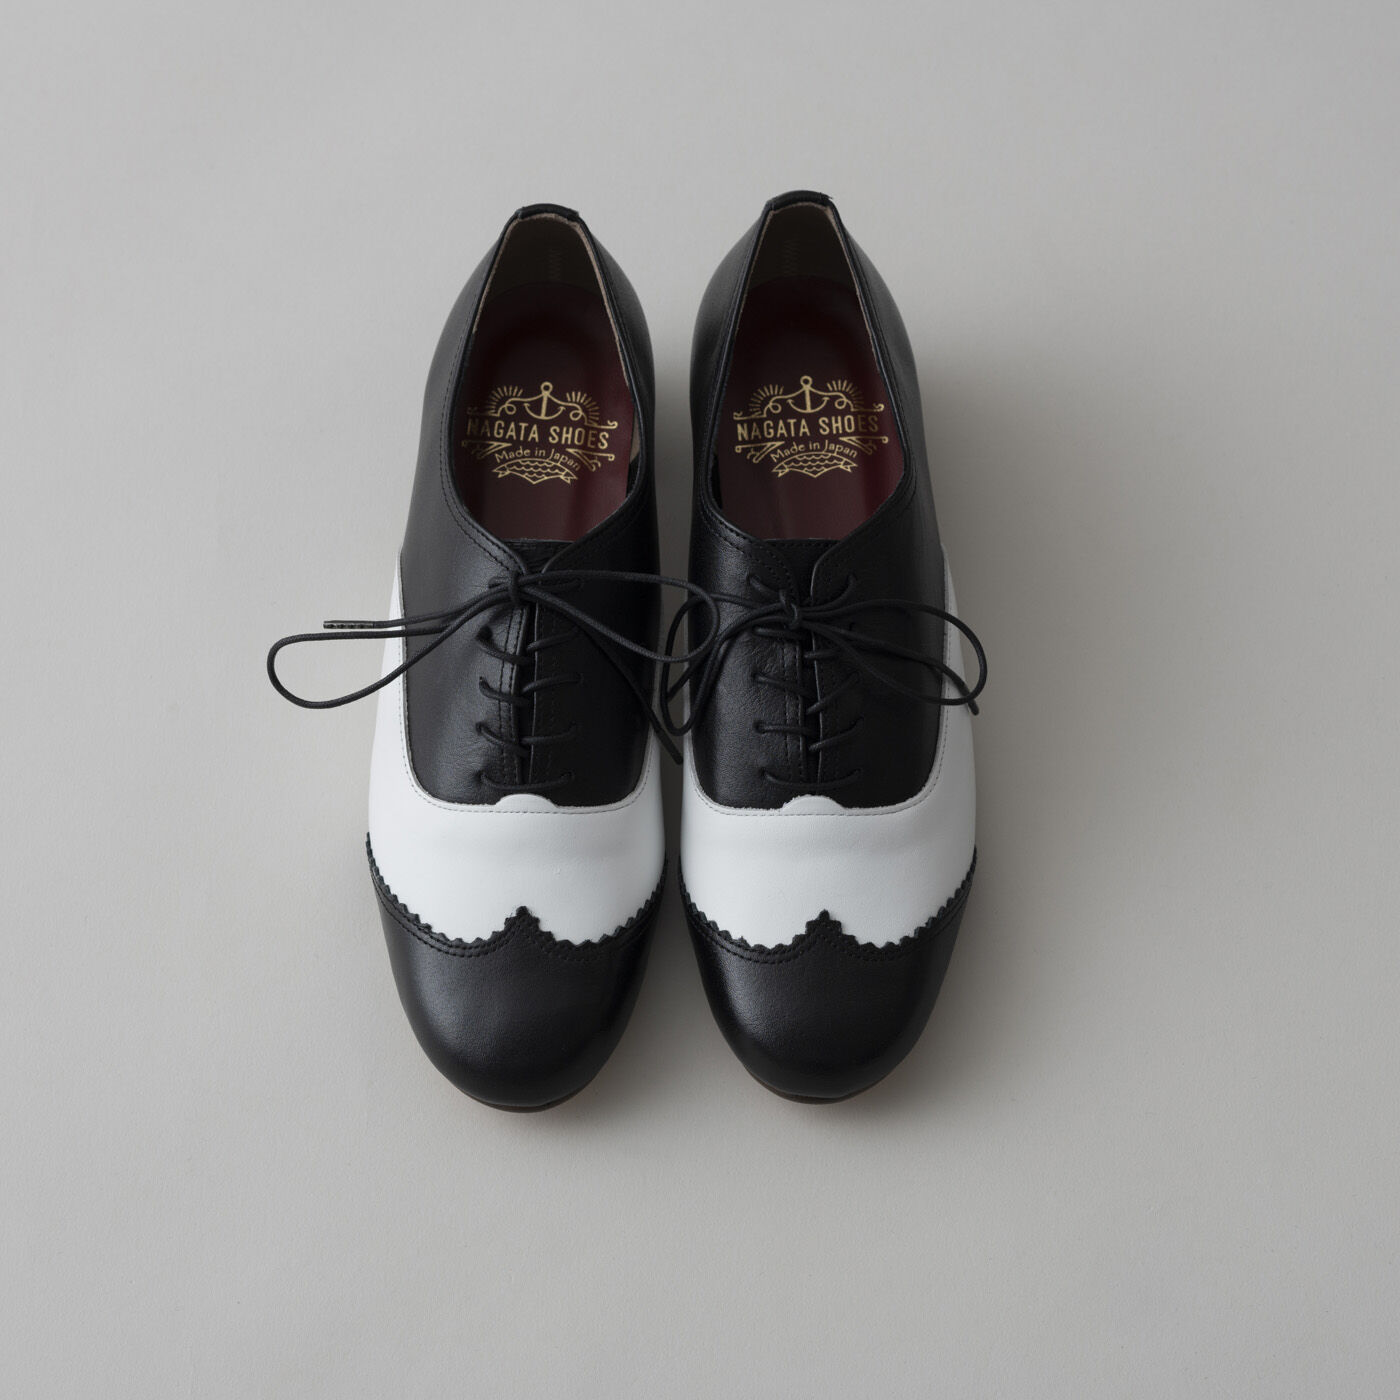 ＆Stories|長田の靴メーカーと作った　職人本革のレースアップシューズ〈ブラック×ホワイト〉|22.0?25.5cmまで揃った充実の8サイズ展開も自慢。